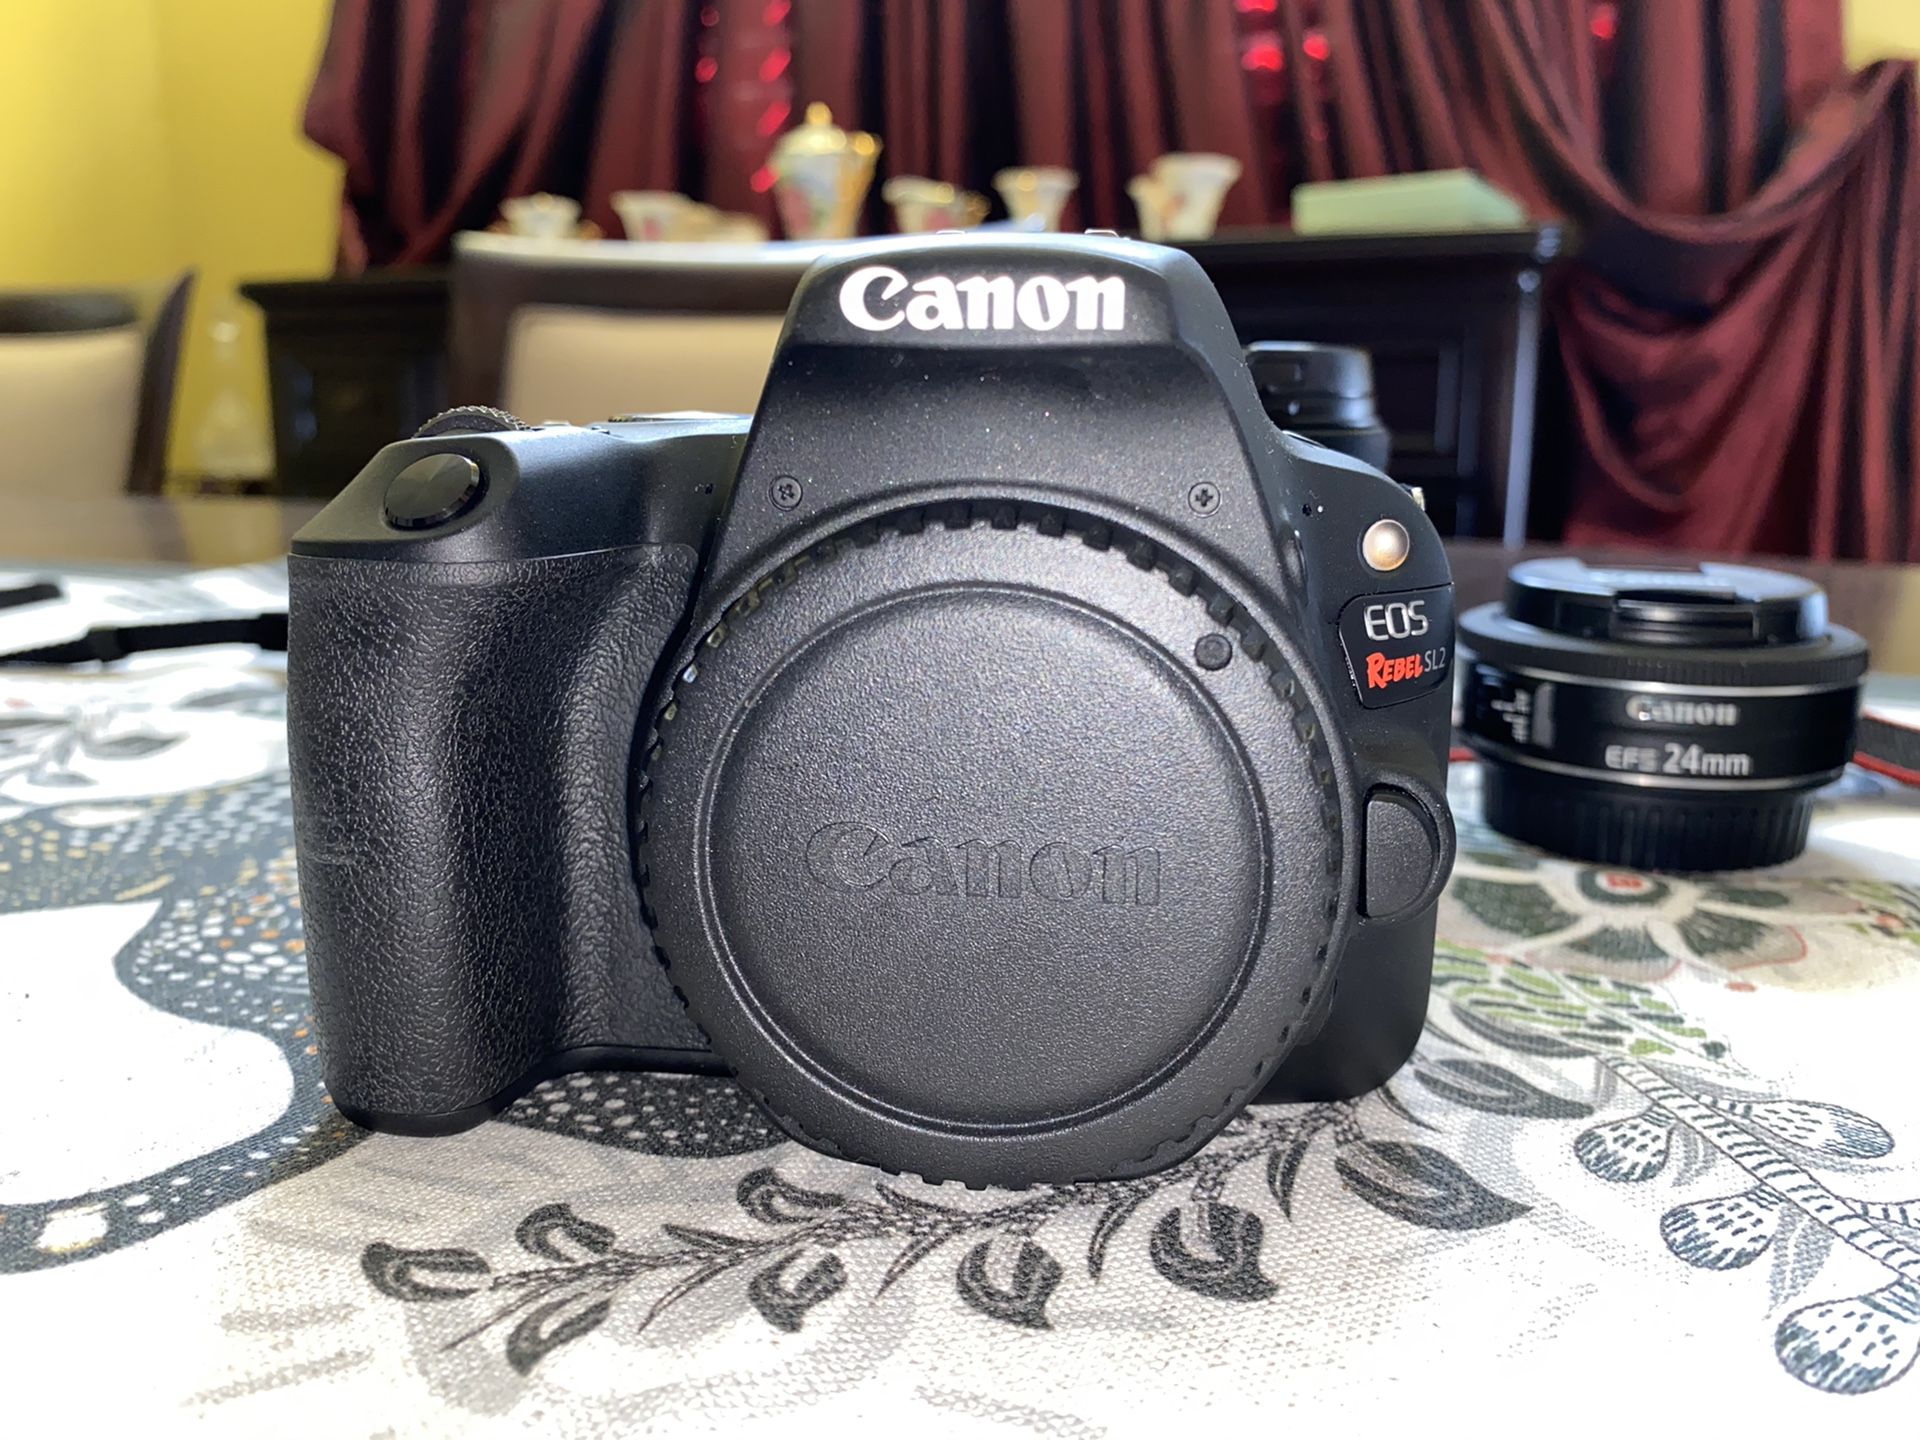 Canon SL2/200D w/ 3 lenses. Willing to negotiate price! (Also read description)